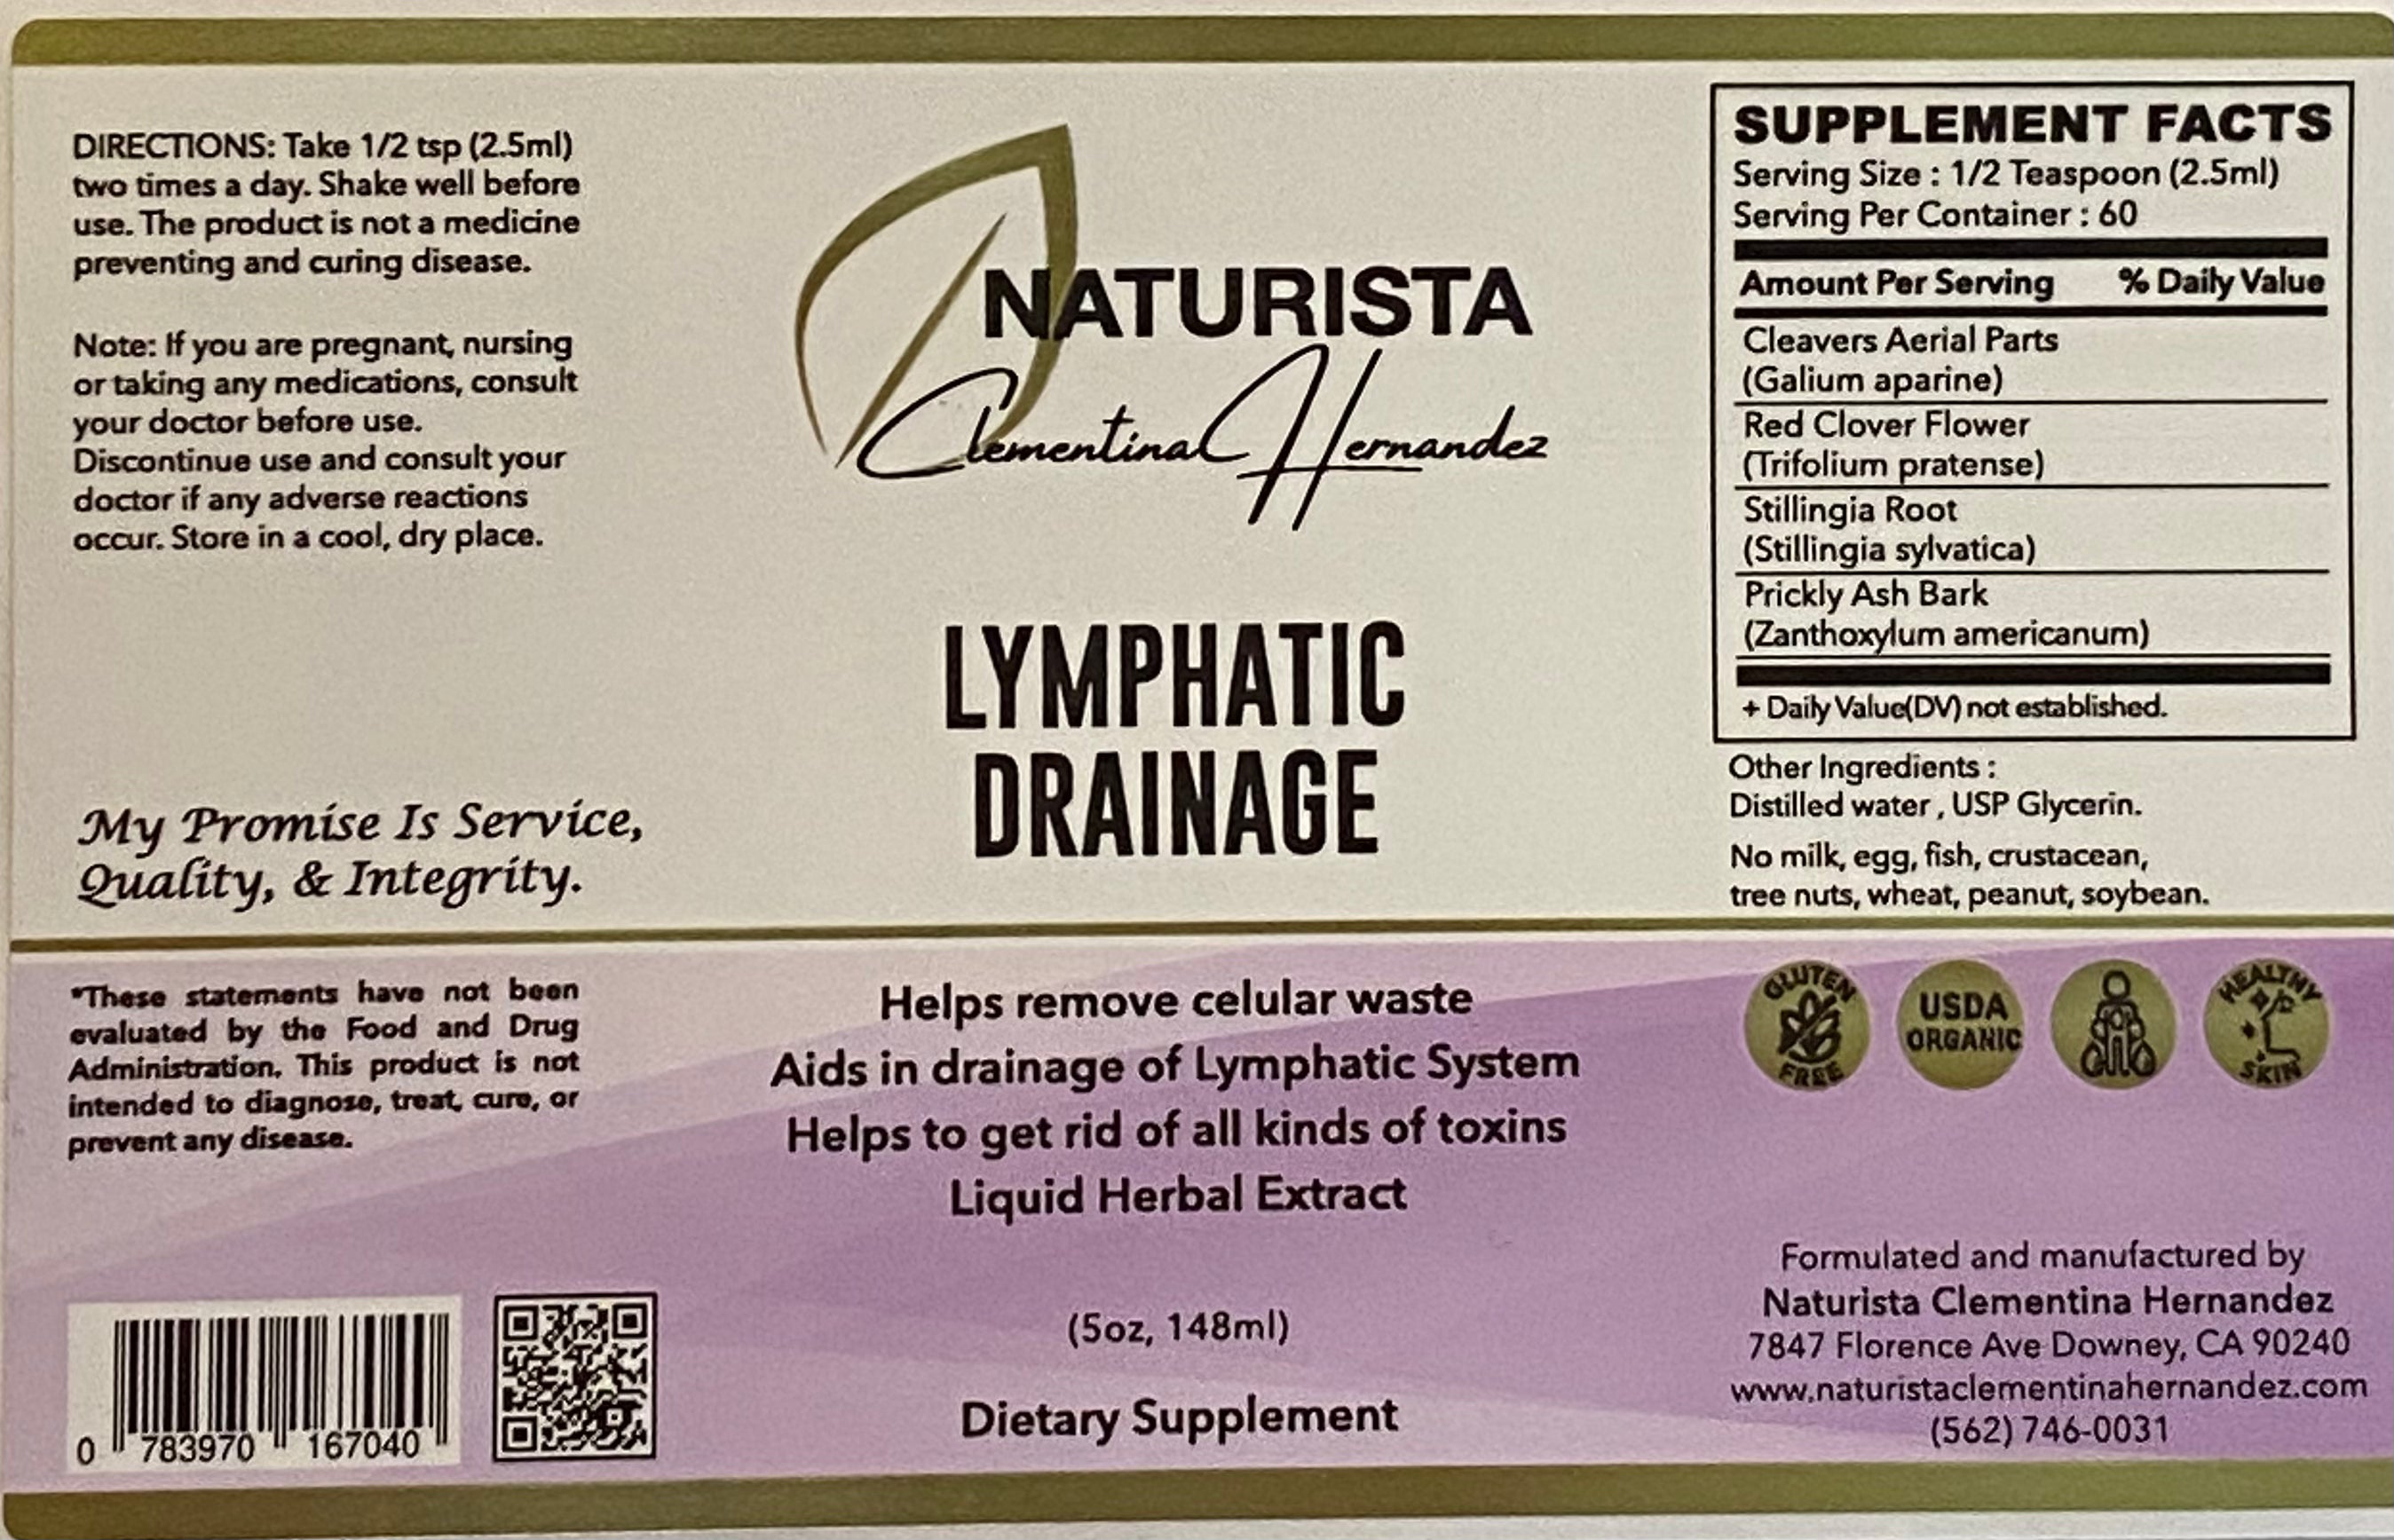 Lymphatic Drainage Compra 2 y recibe uno gratis